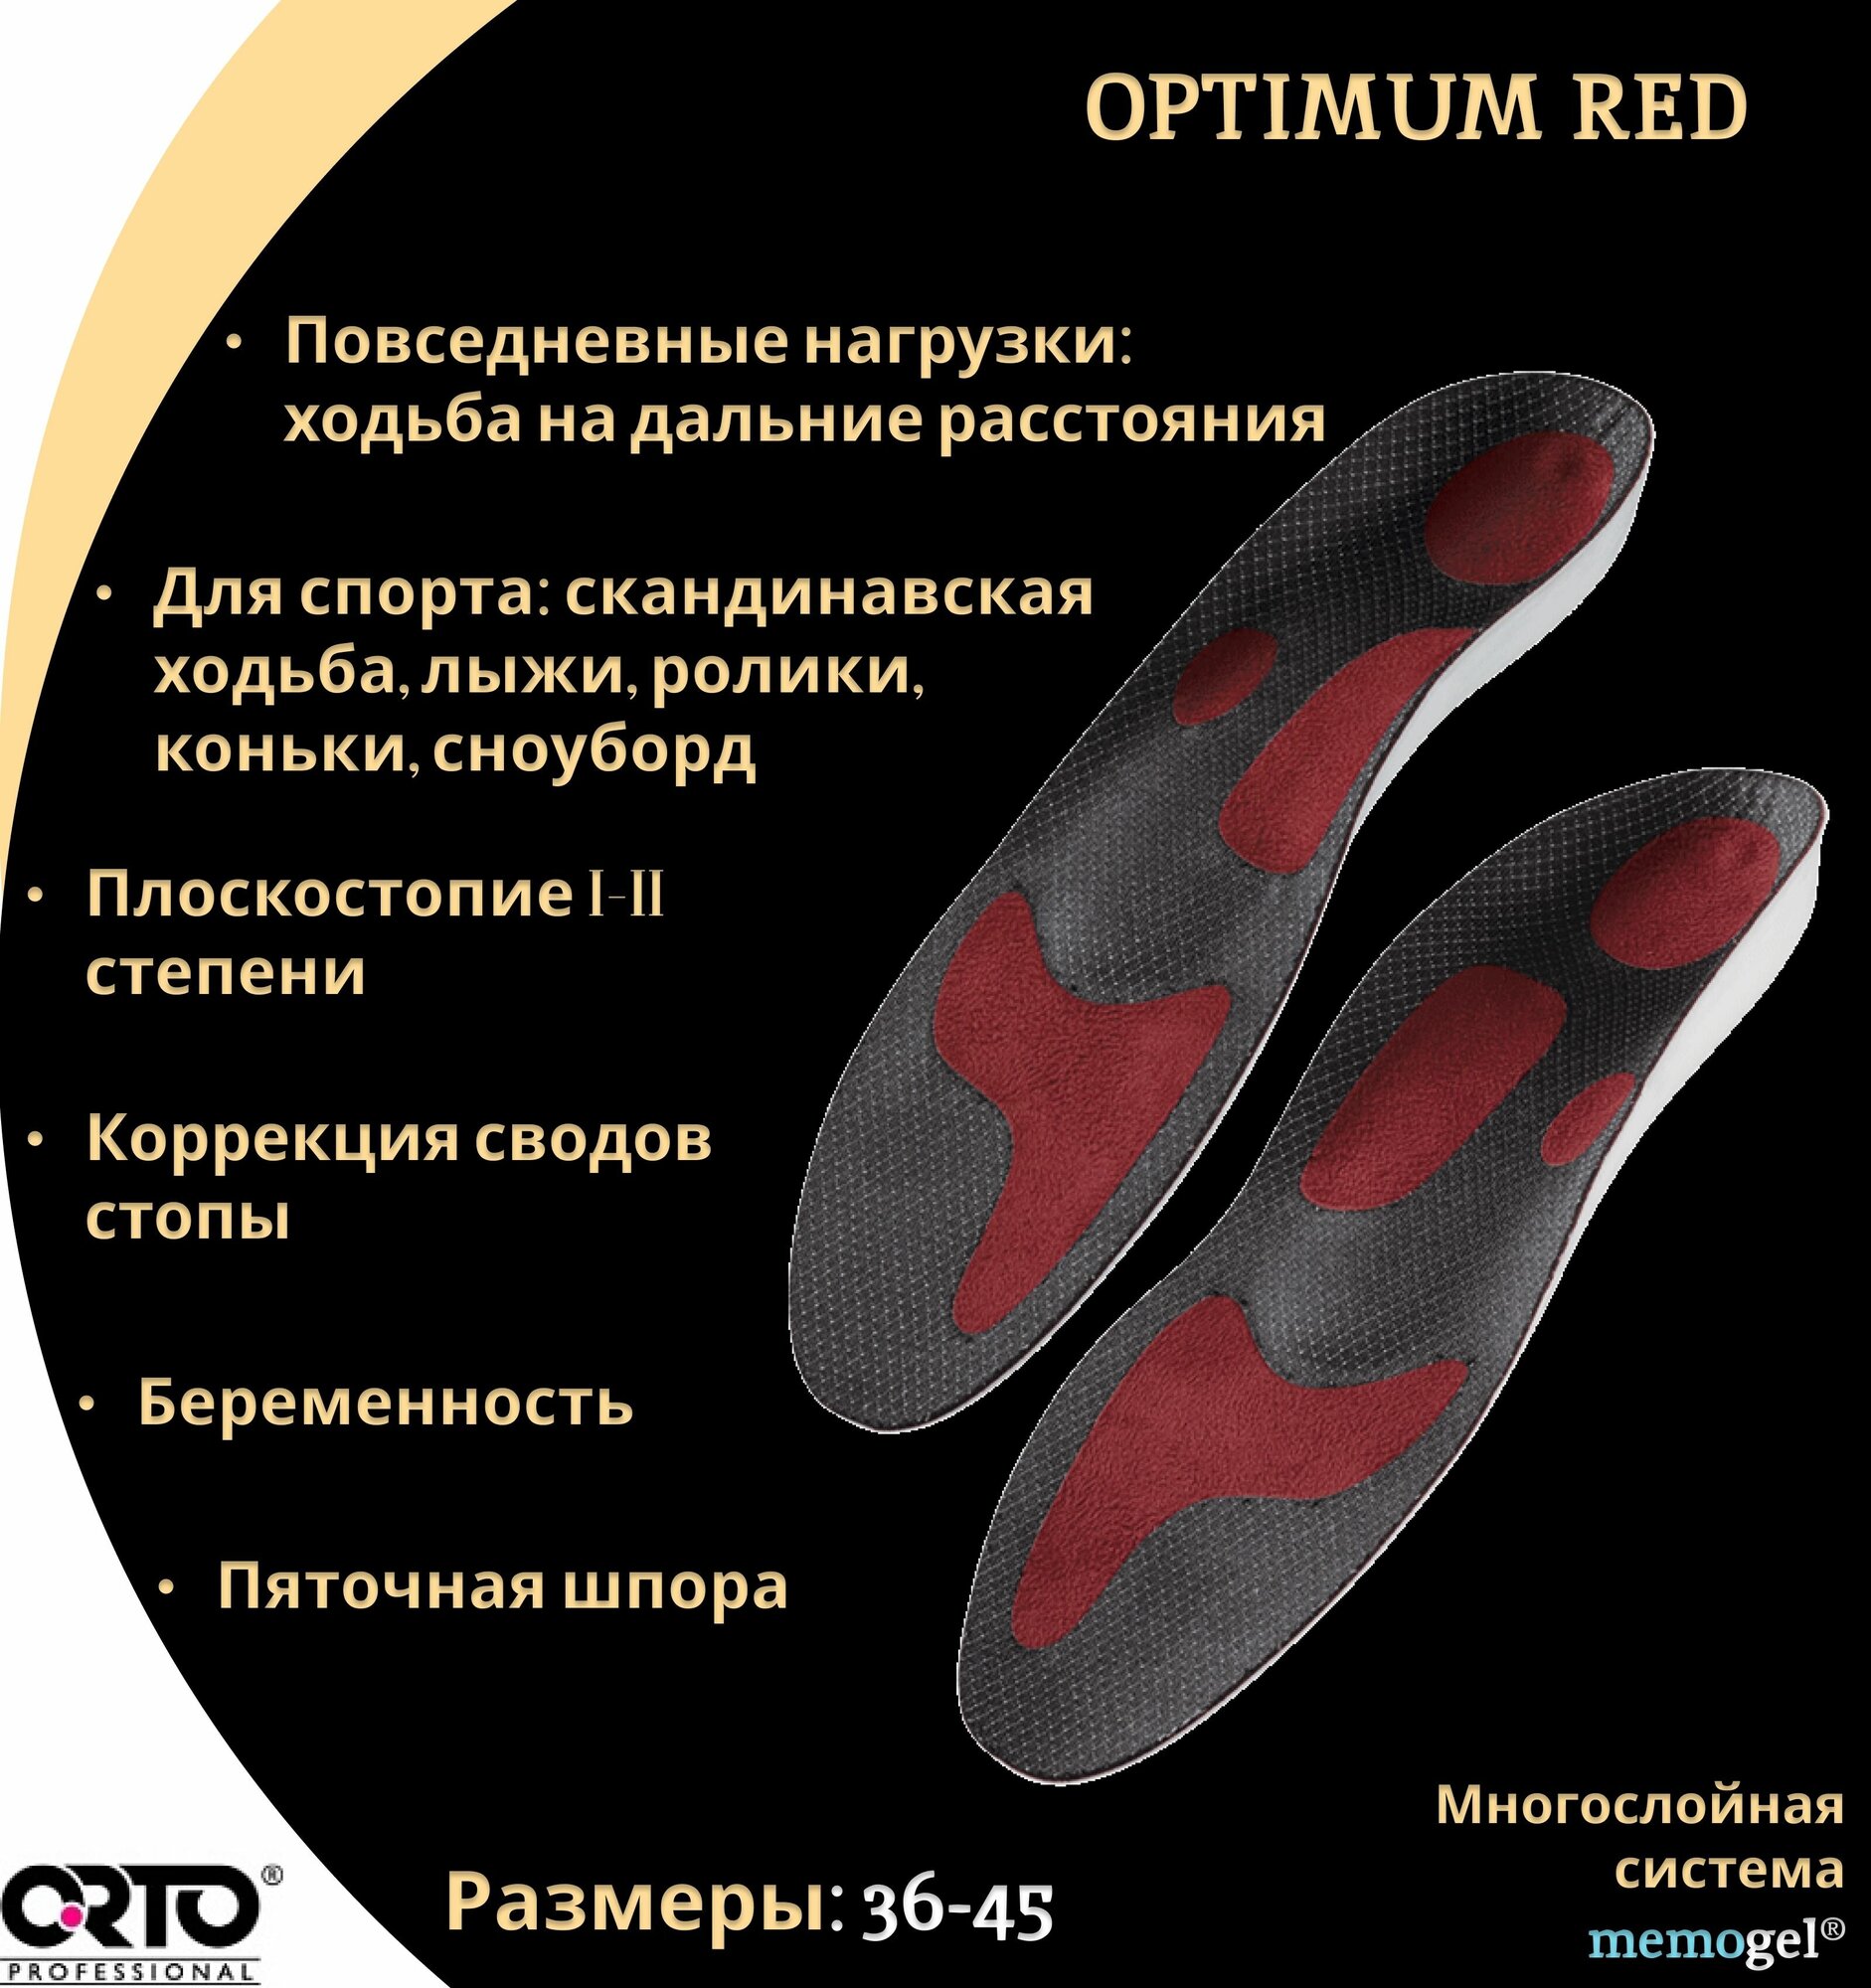 Cтельки ортопедические мужские женские каркасные с эффектом памяти Orto Professional Optimum Red, при пяточной шпоре, размер 37